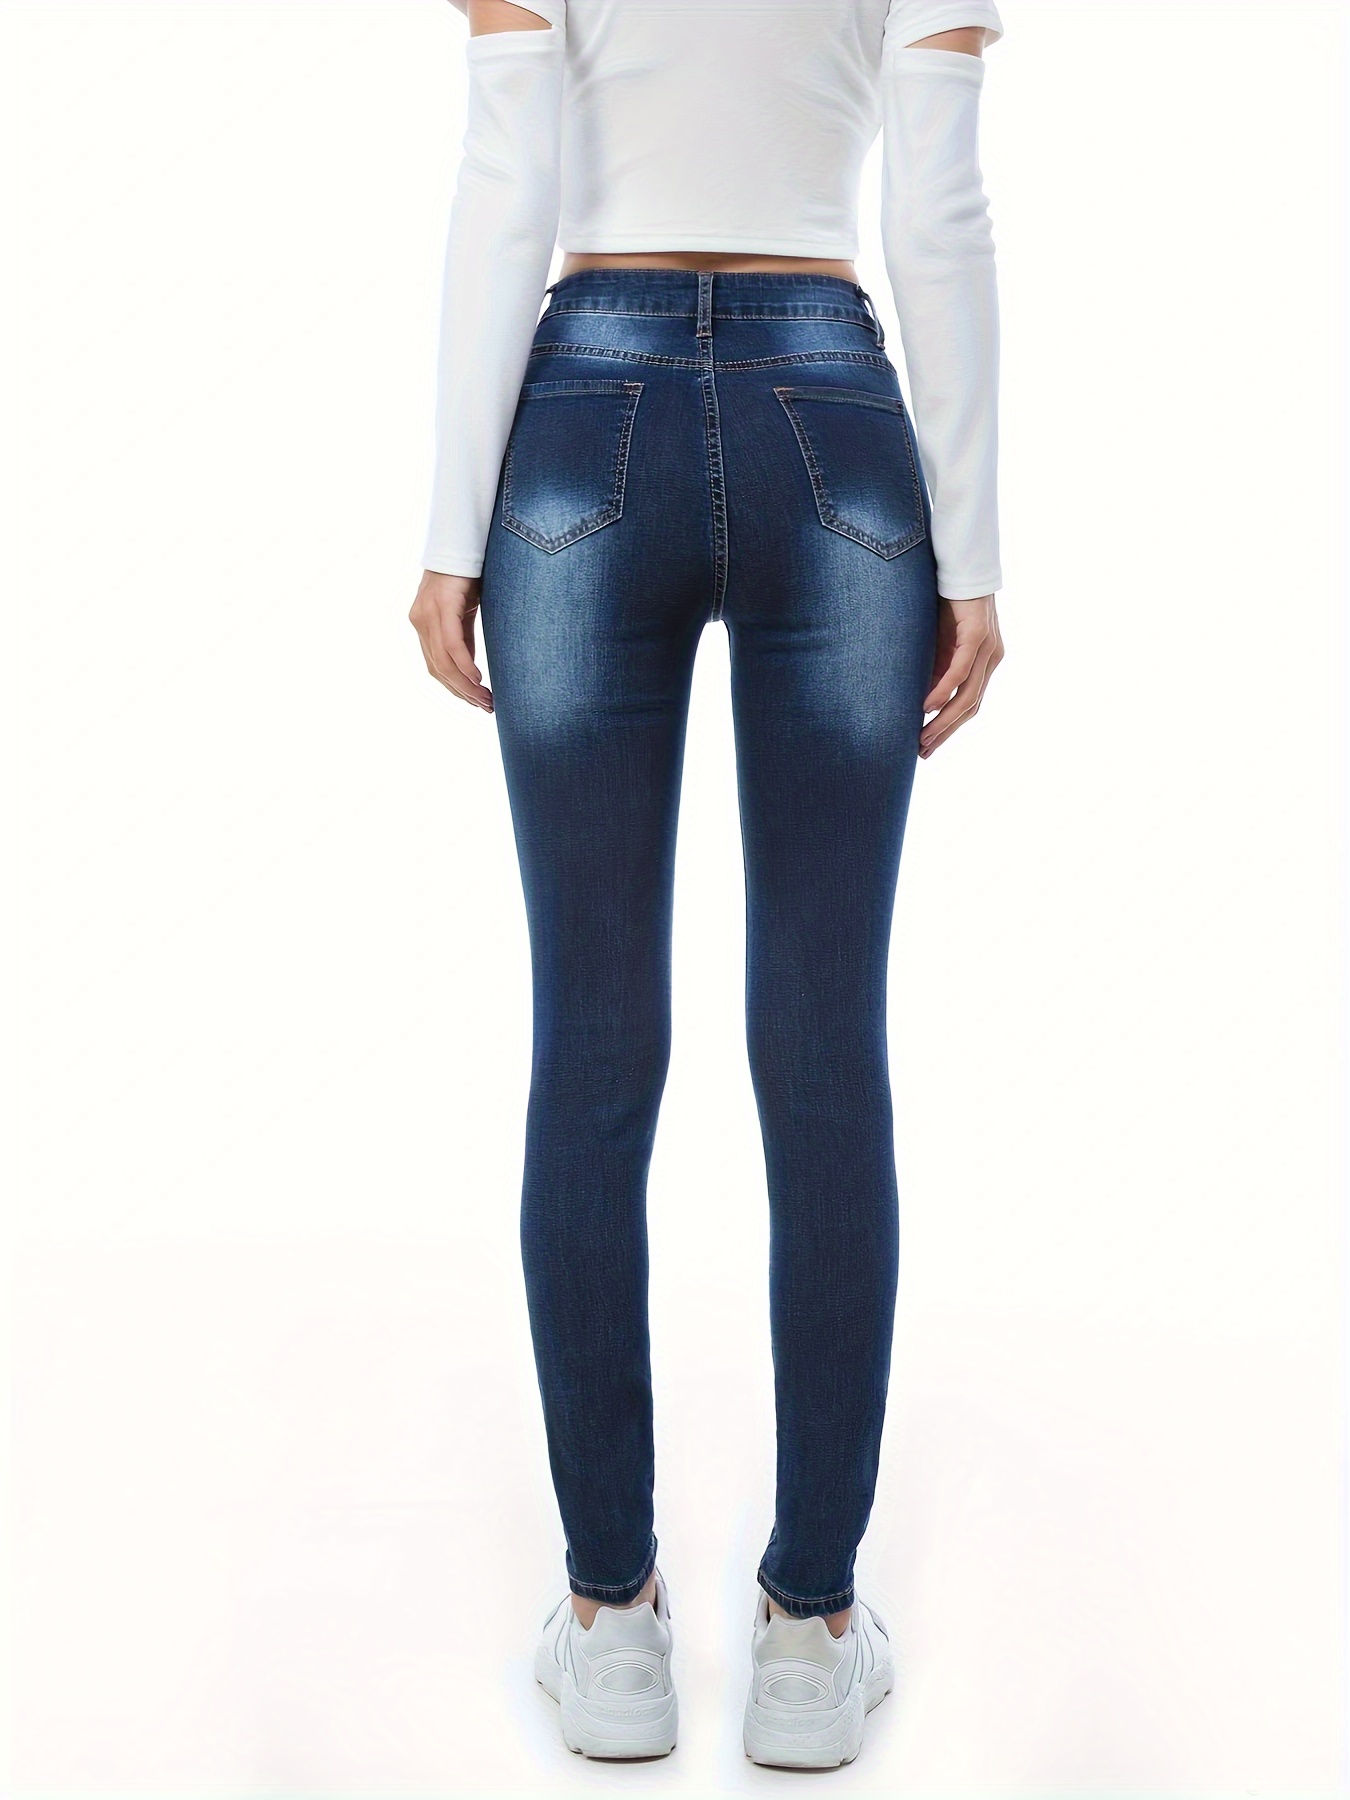 Calça jeans skiny cintura alta detalhes rasgado bolsa funcional